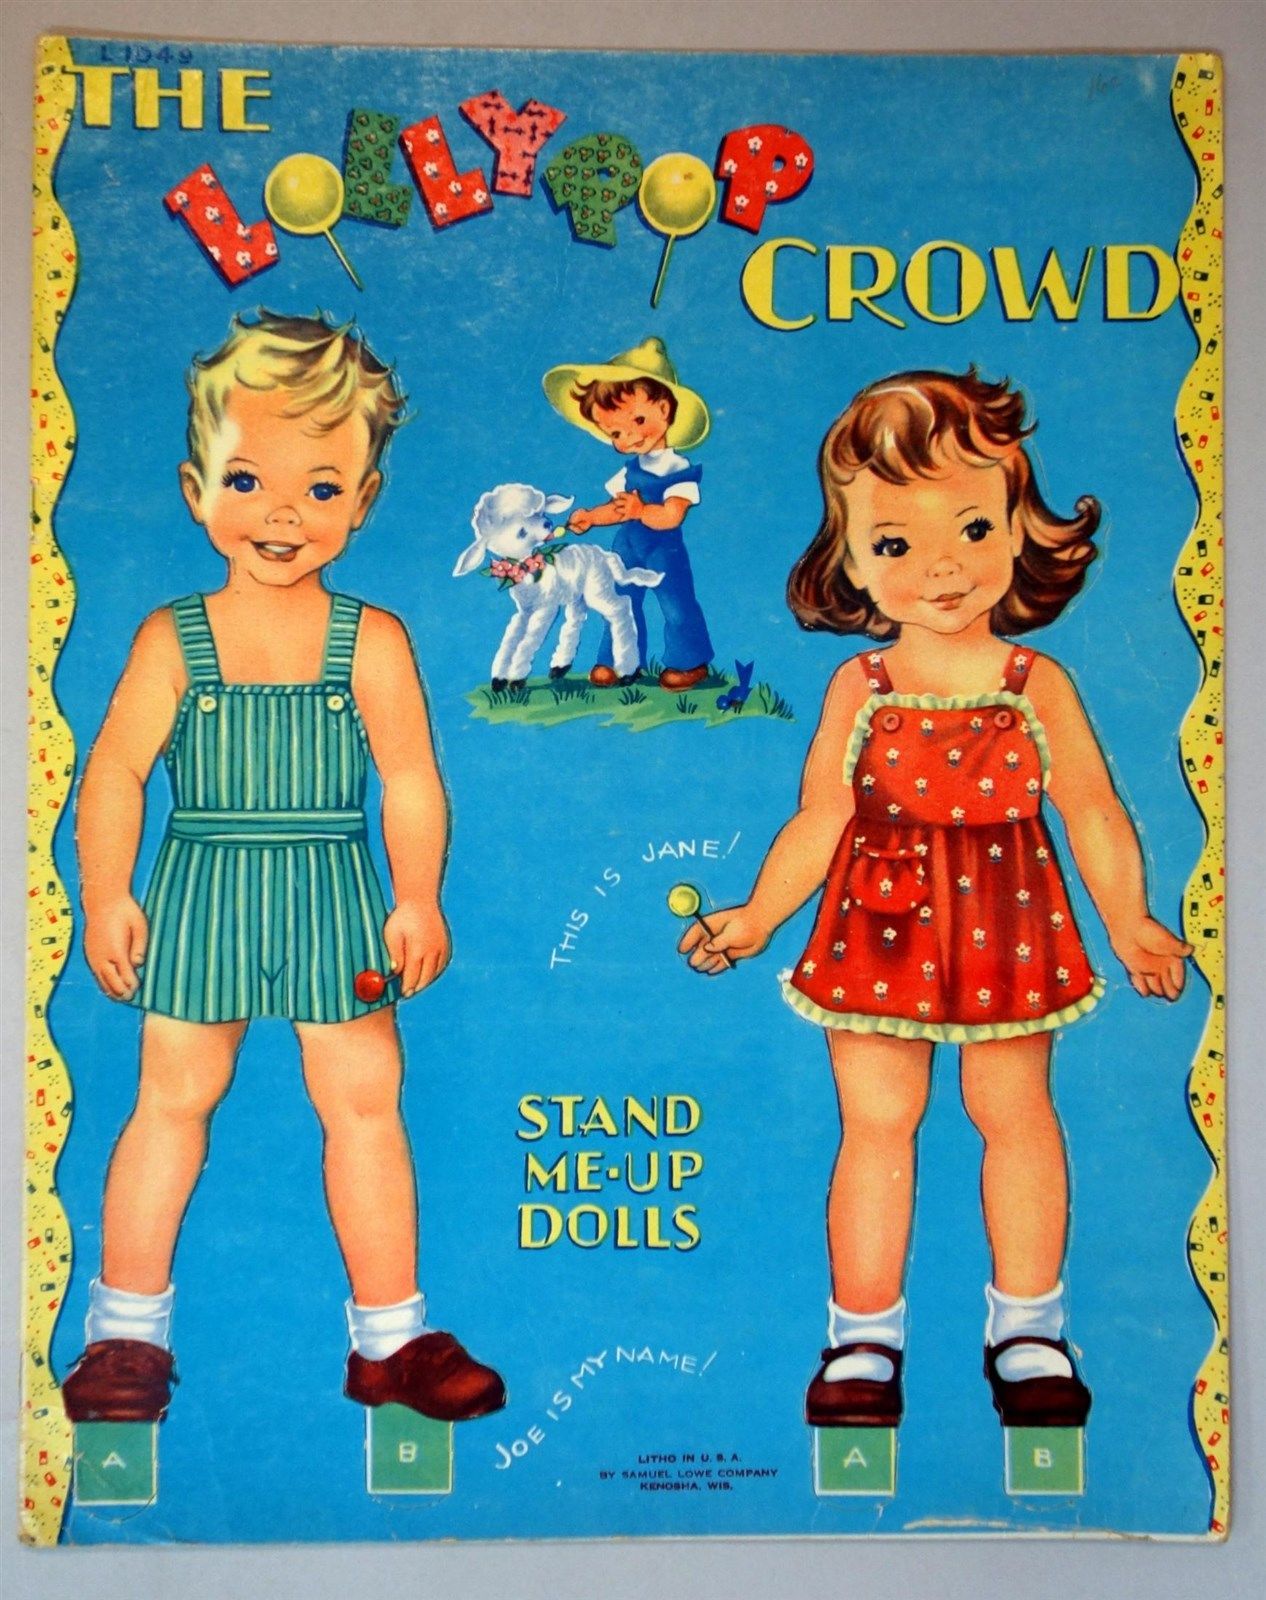 Un-Cut Paper Doll Book - The LollyPop Crowd - 4 Kids & a Lamb  c1950